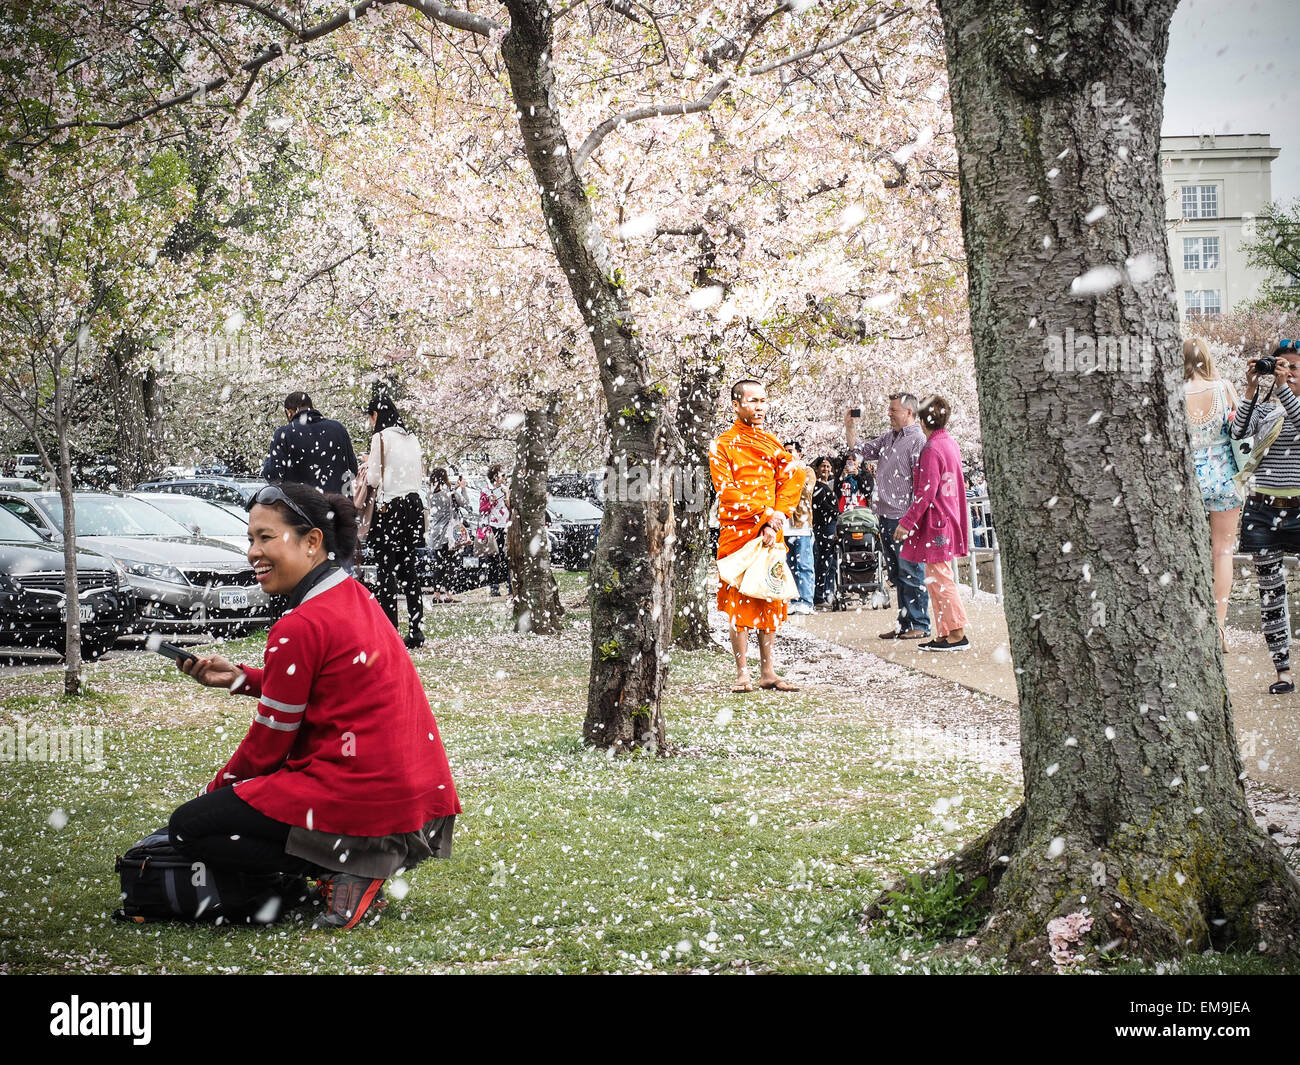 Washington DC, 15 de abril de 2015. Las flores caen del árbol como la nieve como la gente disfruta del último de los cerezos en Washington DC. El pico de Bloom era el domingo 12 de abril, el miércoles 15 de abril fueron las flores que caen de los árboles. Crédito: Jim DeLillo/Alamy Live News Foto de stock